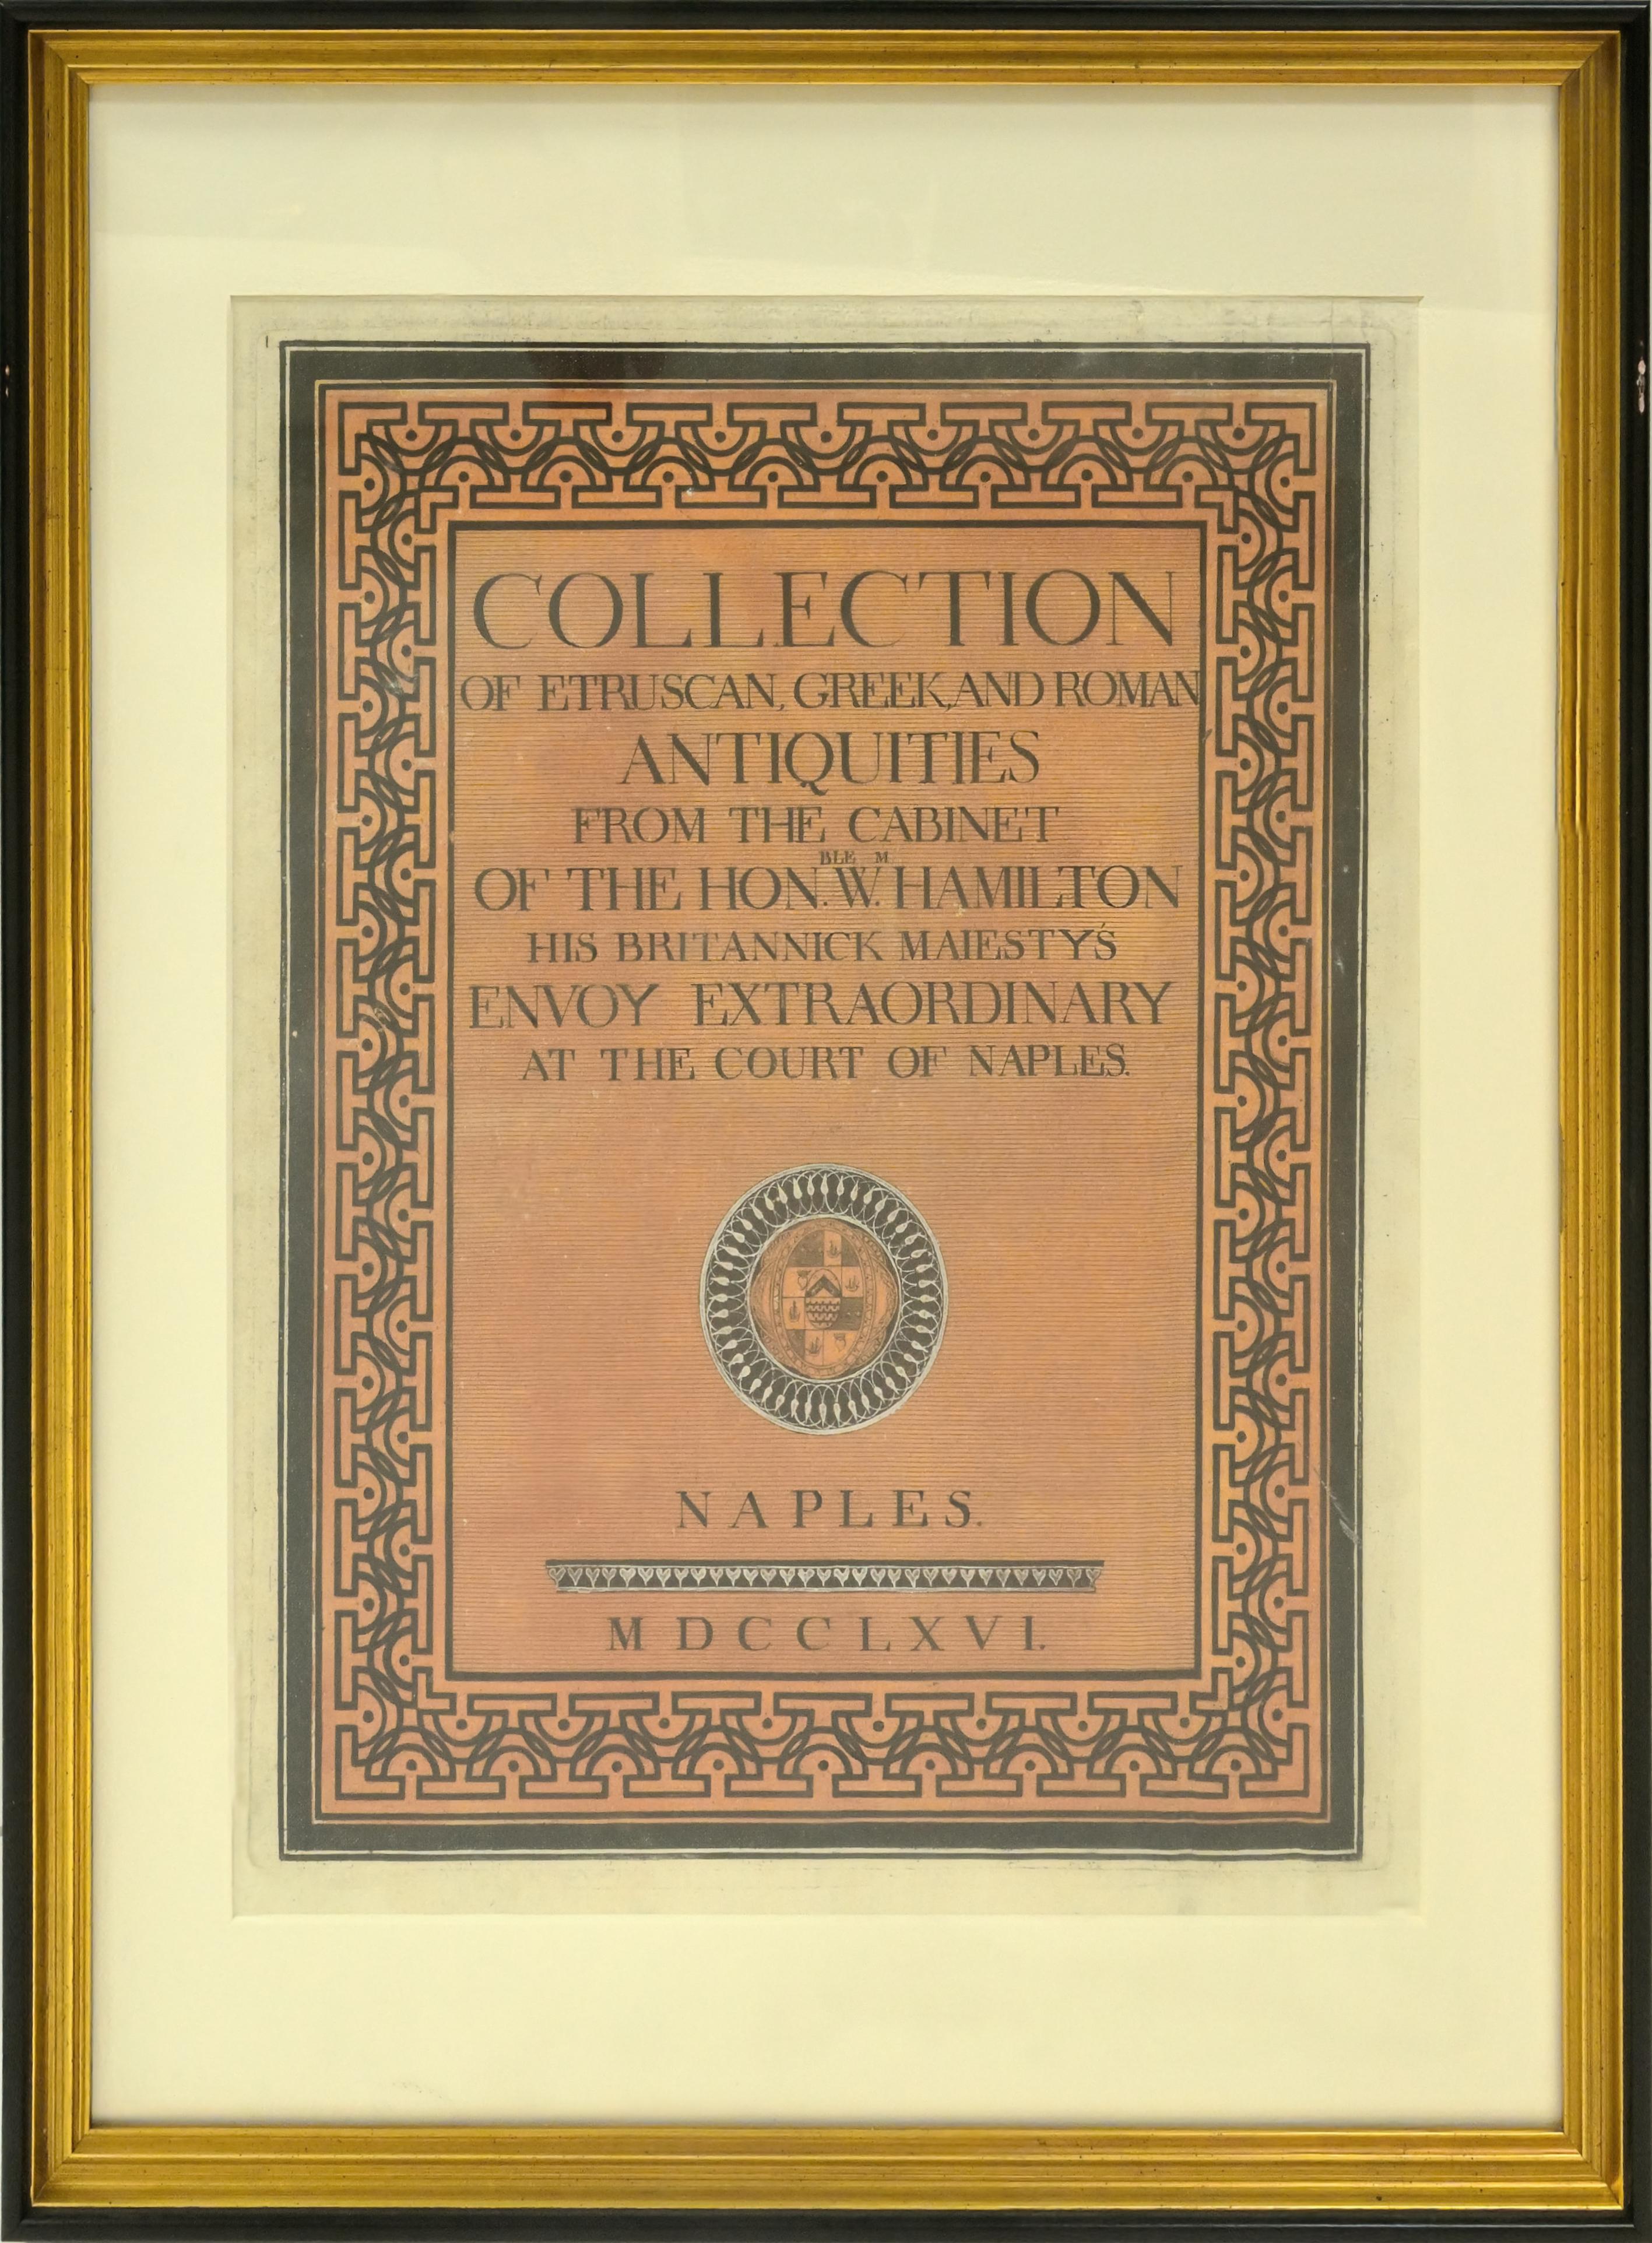 Classical Greek Framed William Hamilton Antiquites Etrusques, Grecques Et Romain Cover For Sale